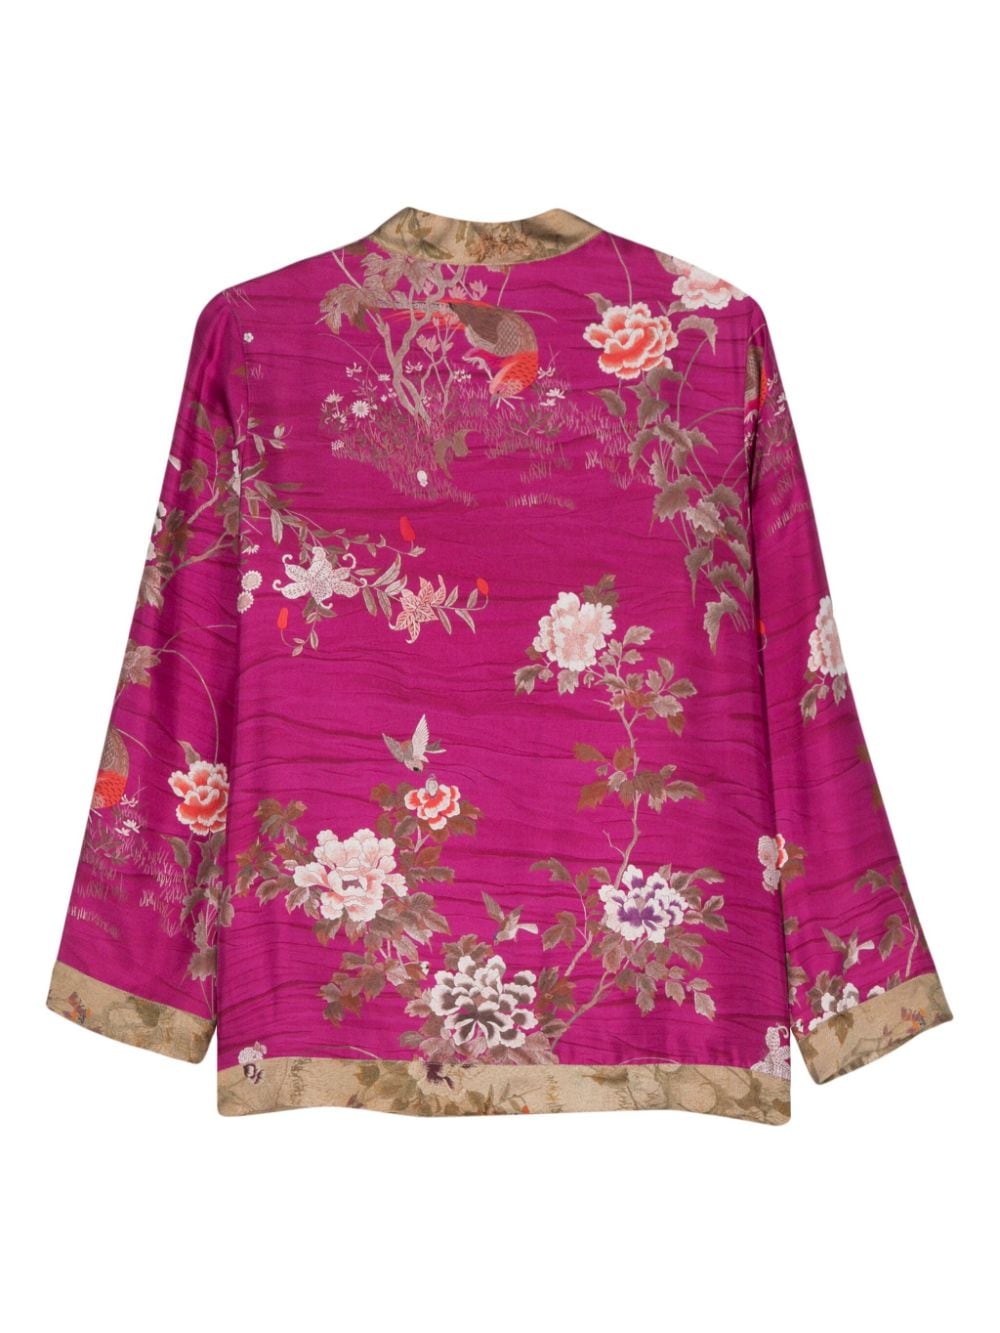 معطف حريري وردي فوشيا بطبعات زهور للنساء - تصميم انعكاسي بدون ياقة خارجية